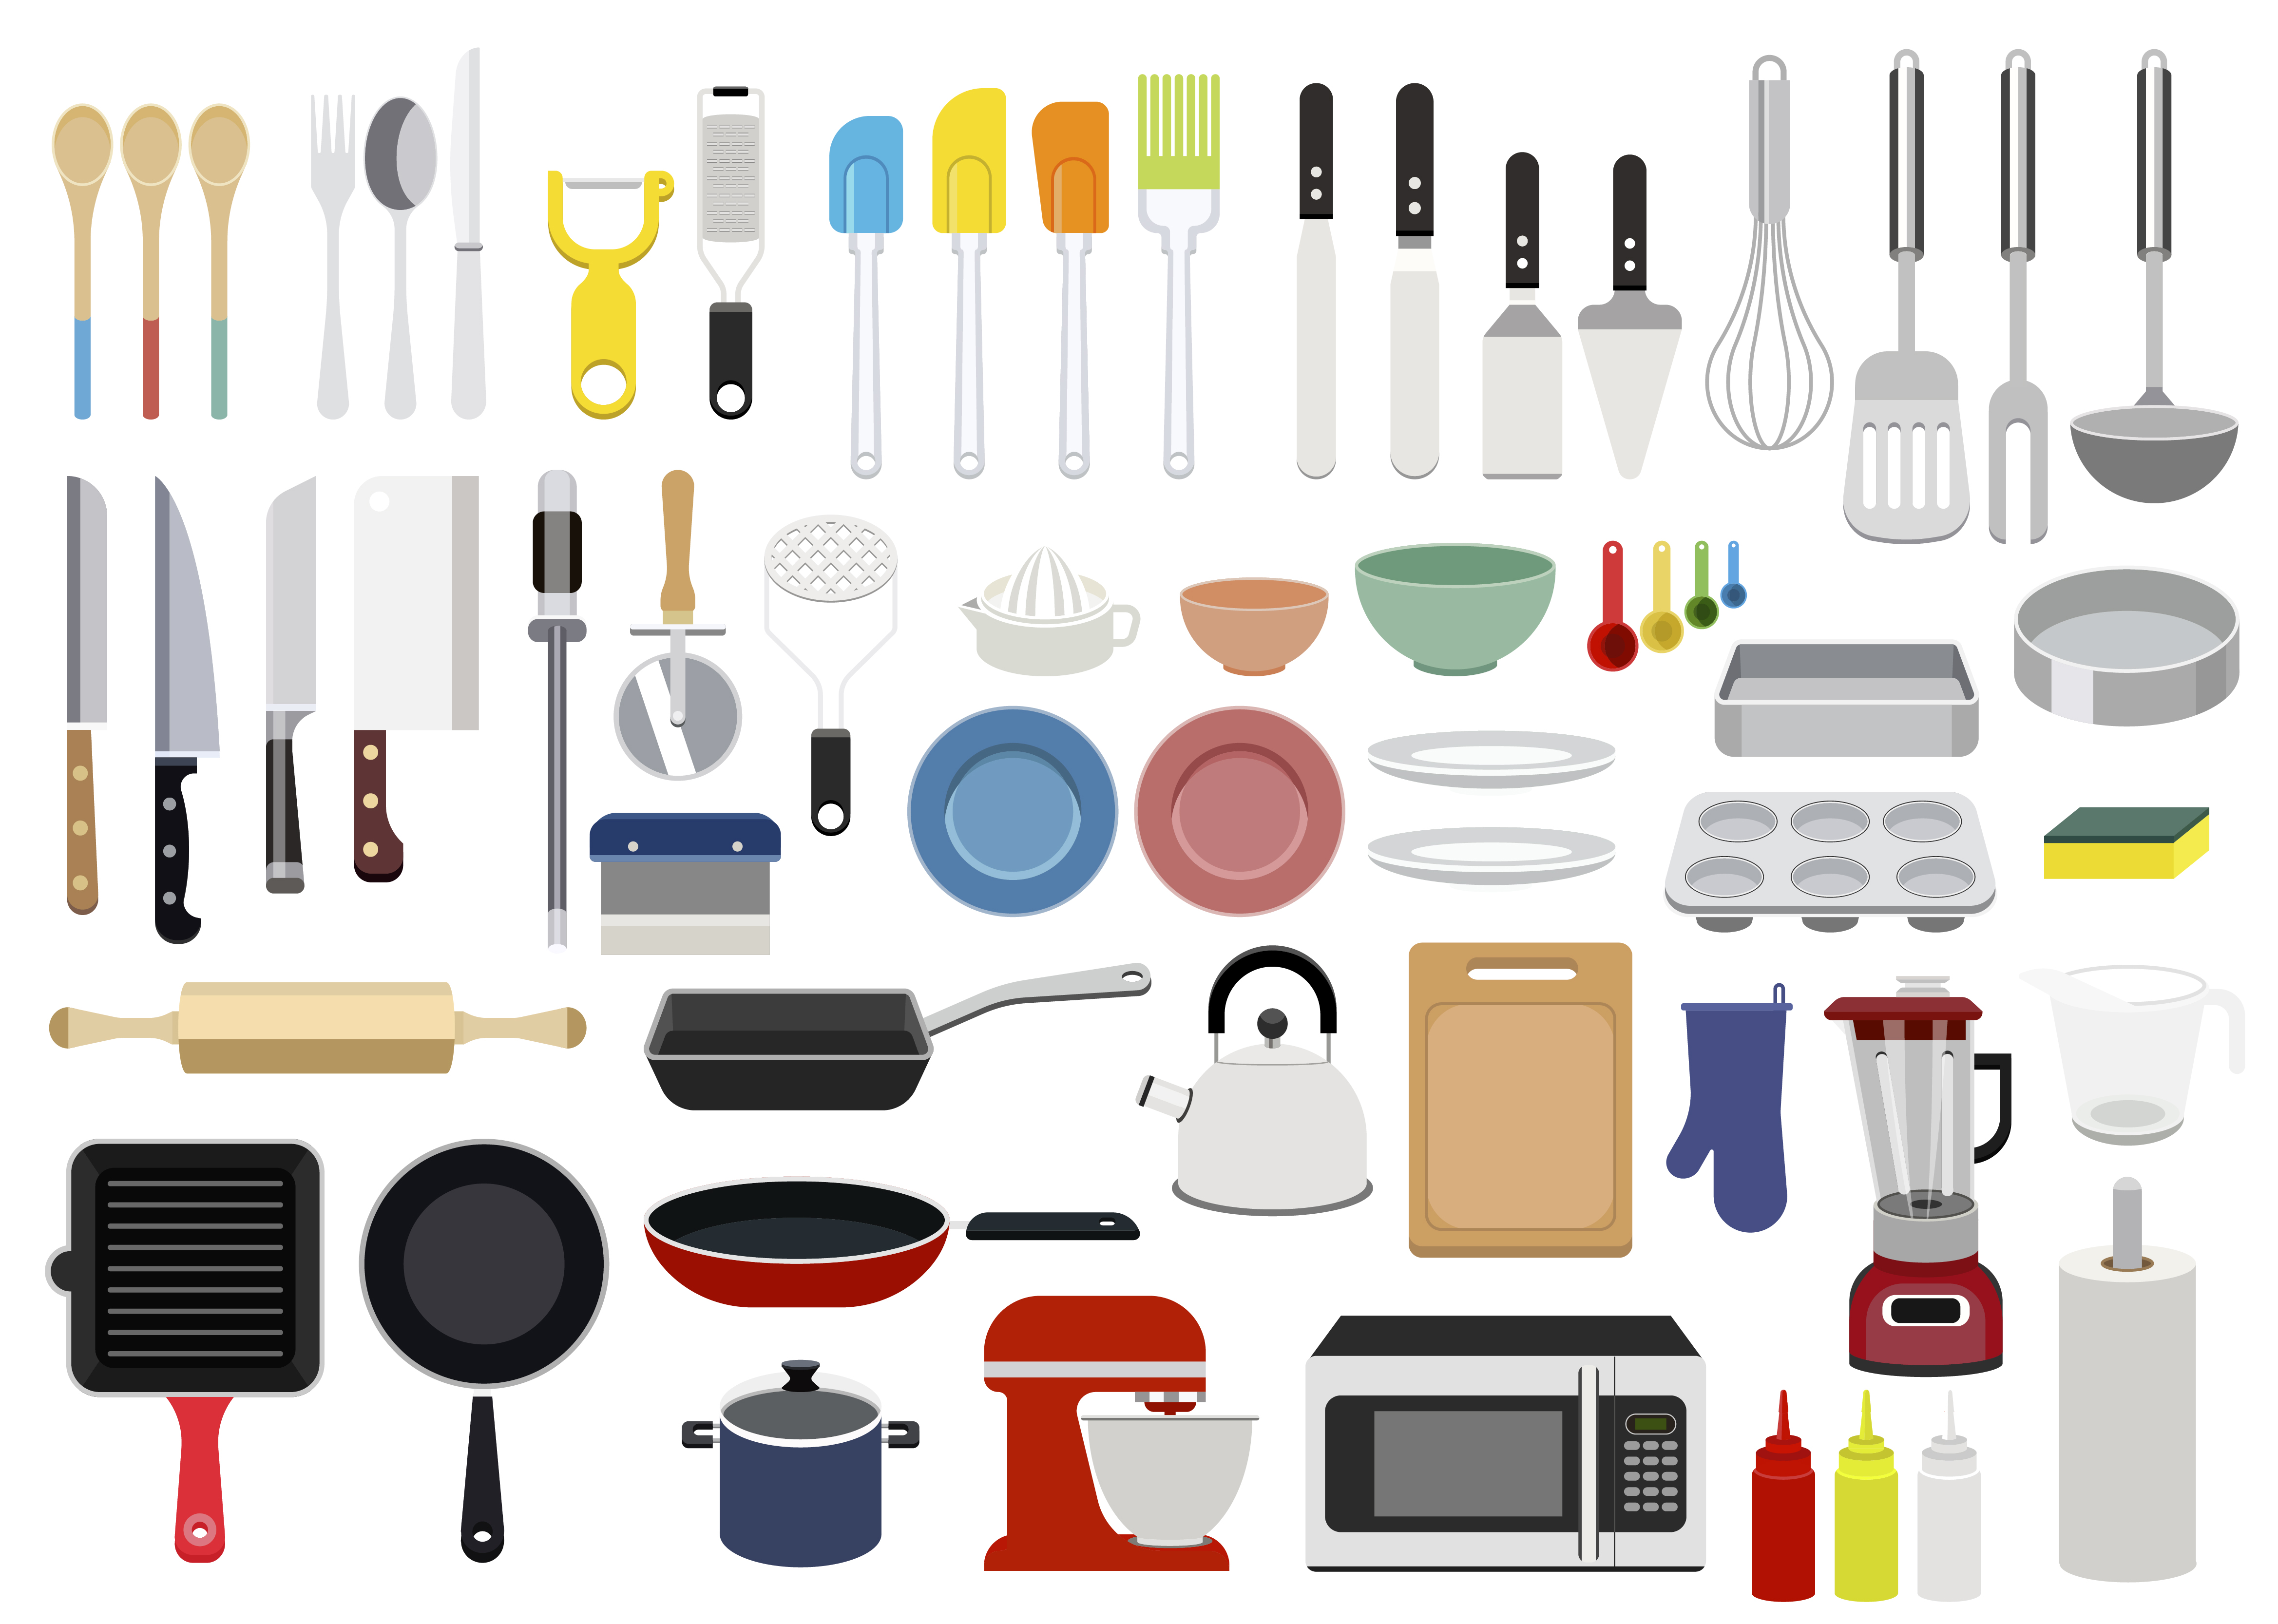 graphic design kitchen utensils